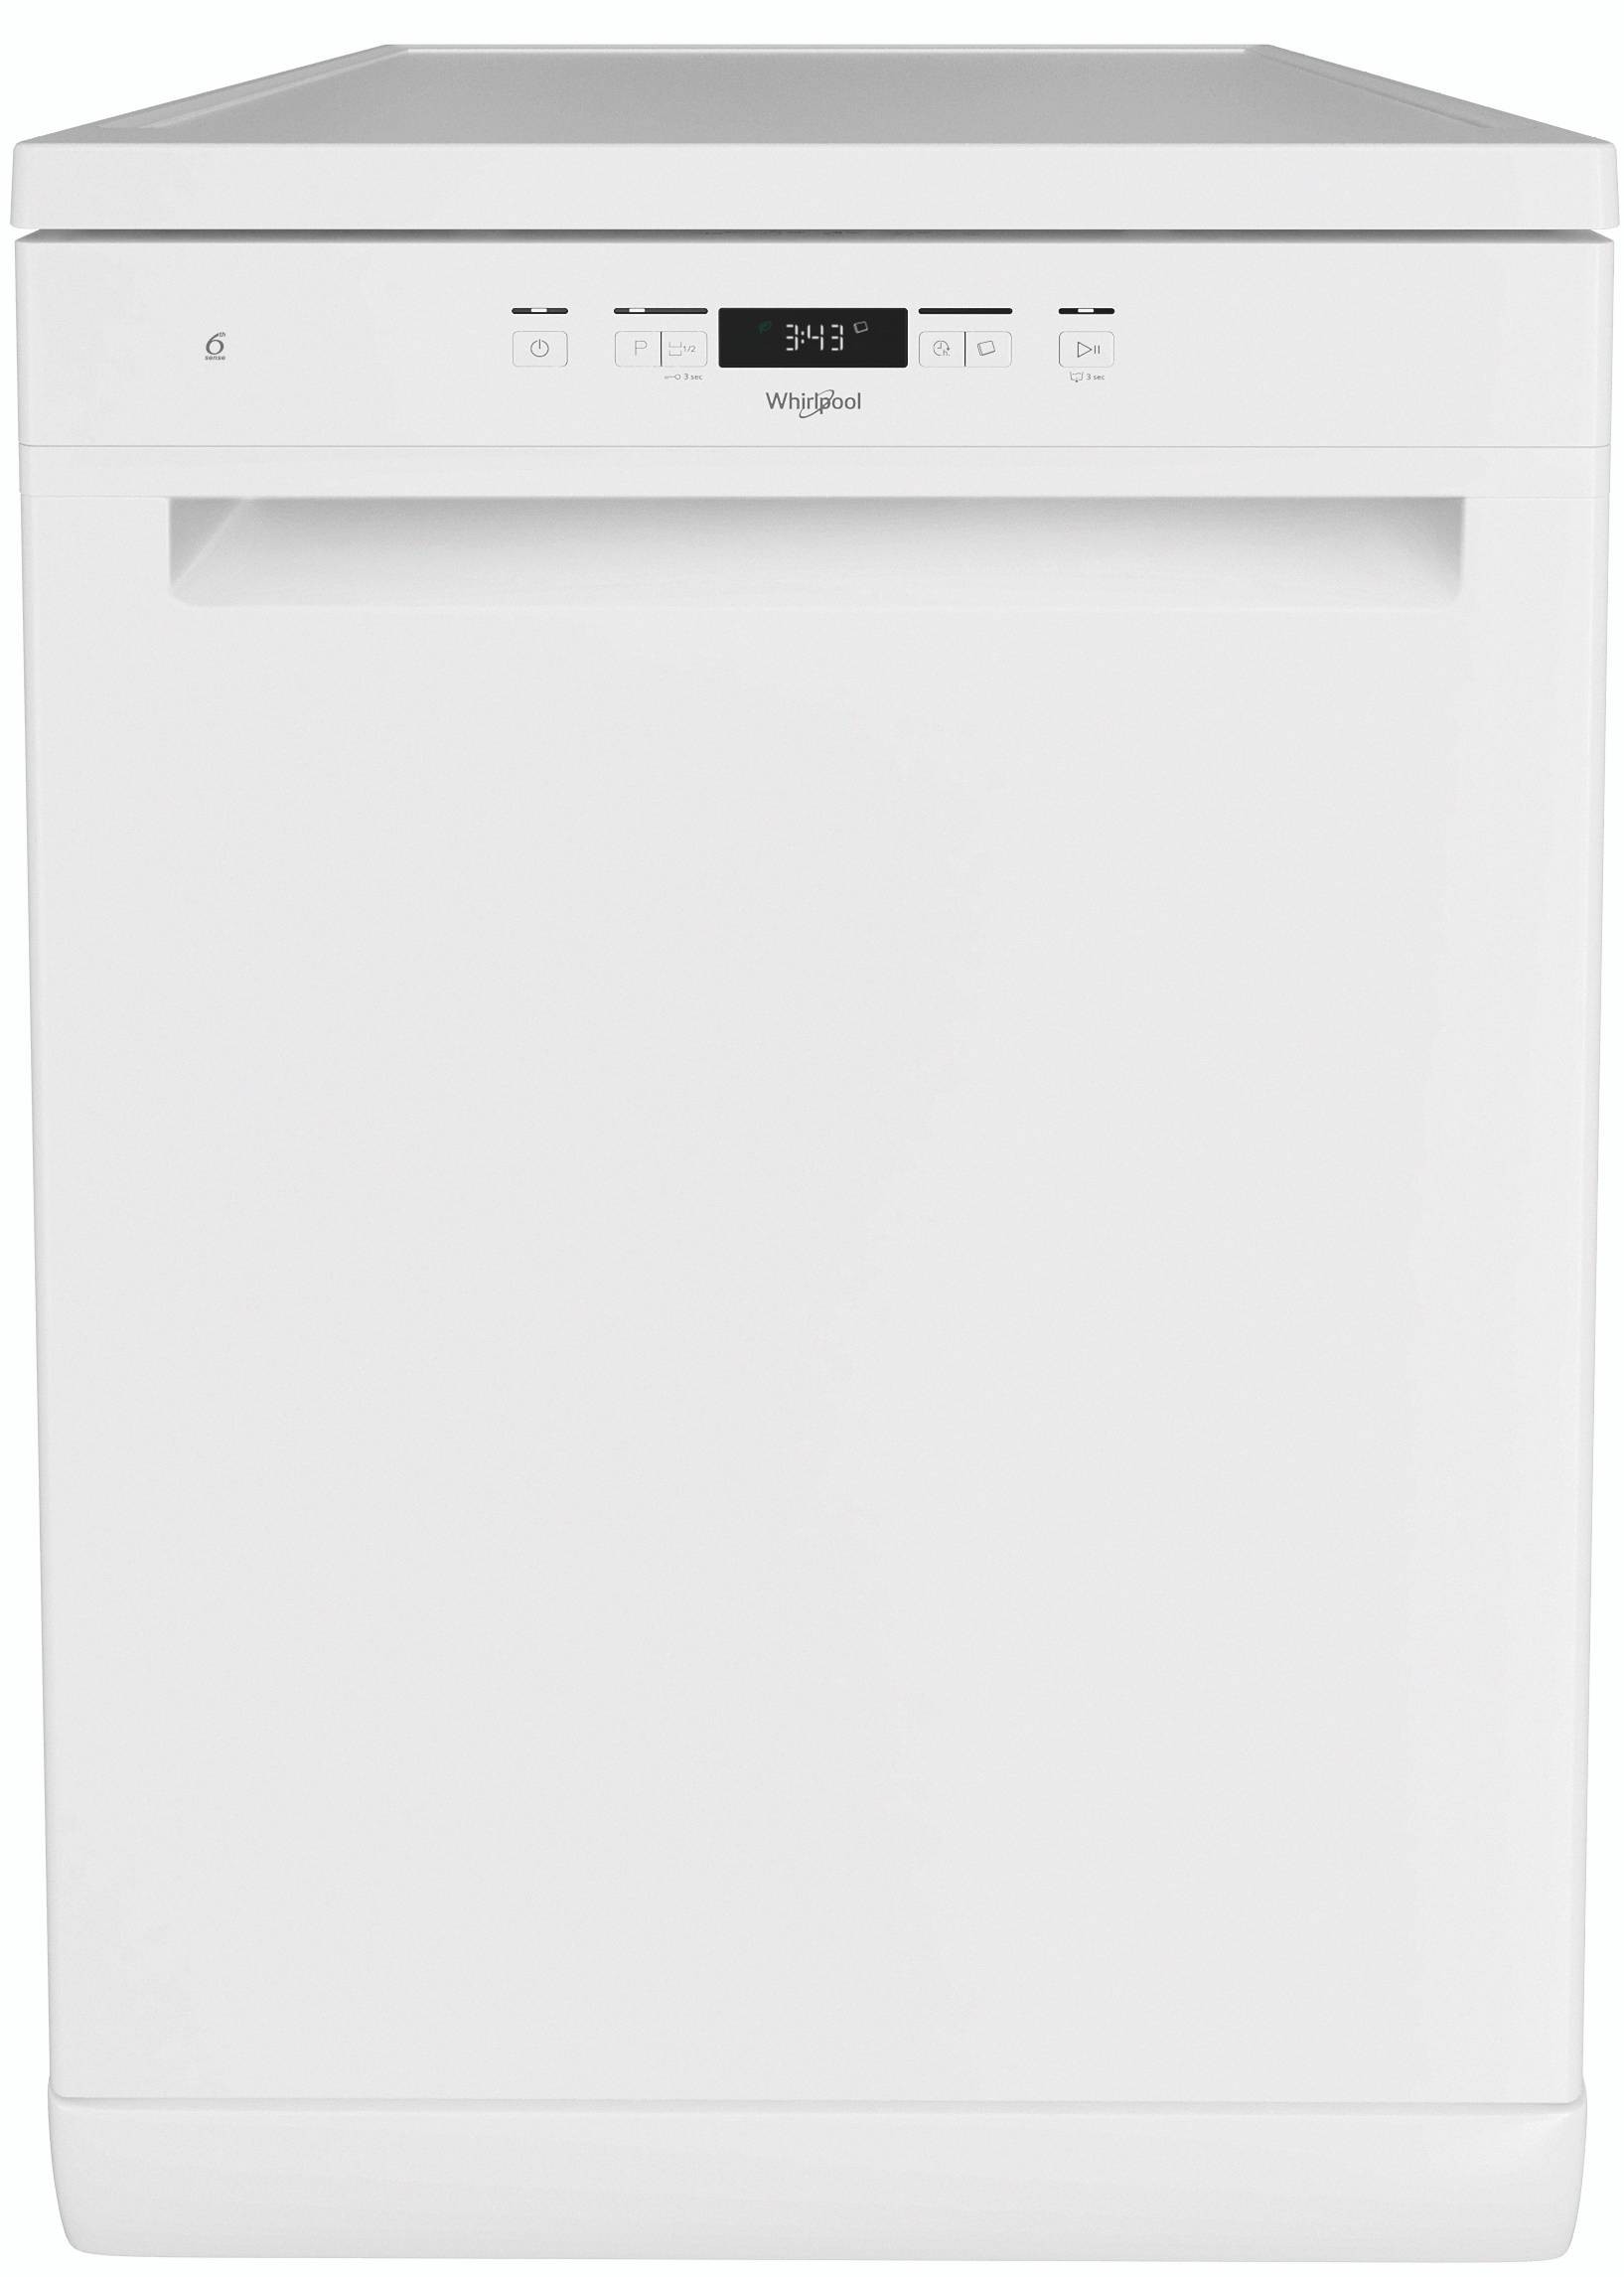 Lave-vaisselle BEKO DFN113 - Super U, Hyper U, U Express - www